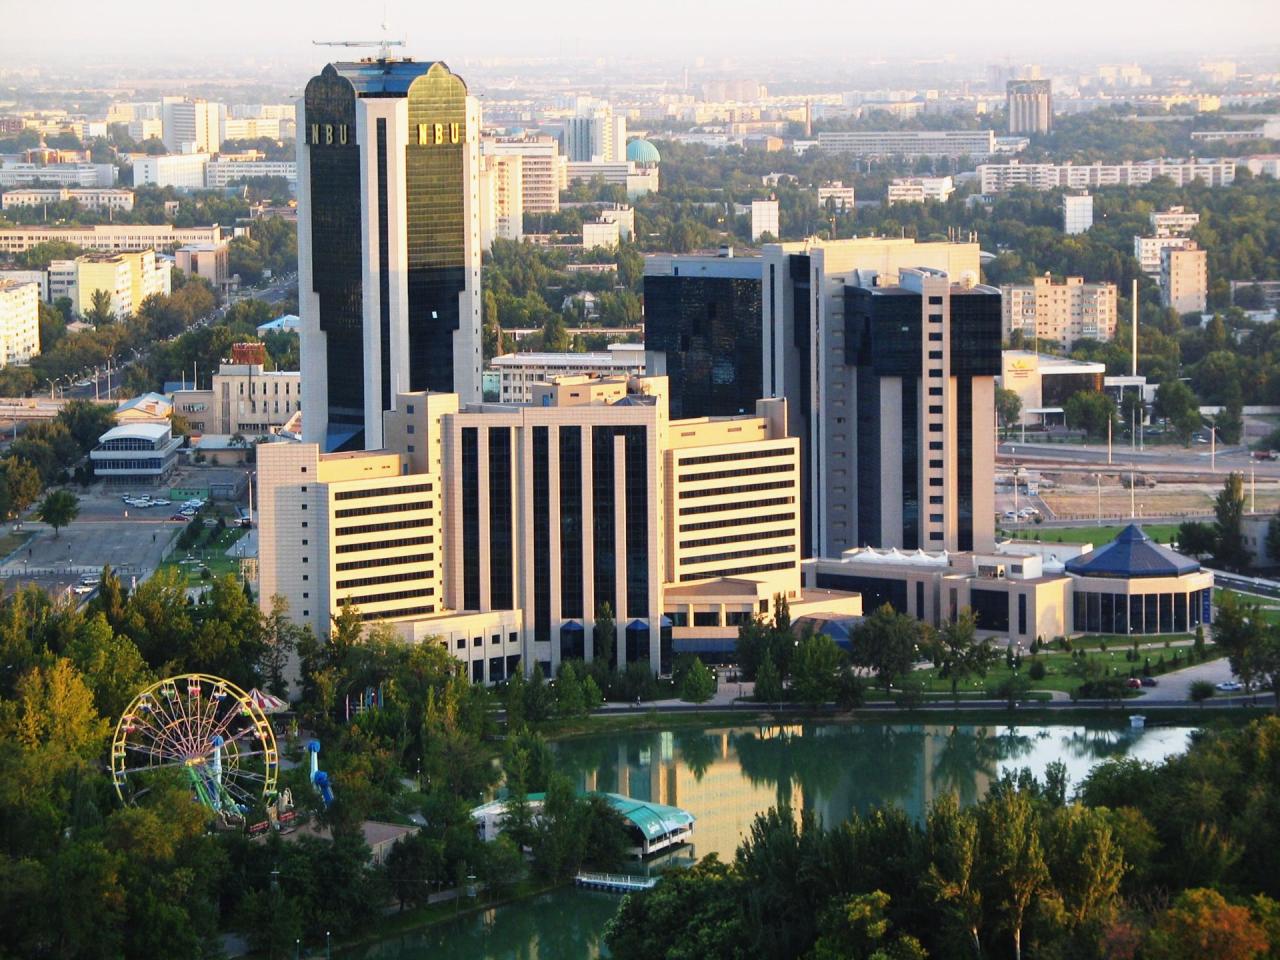 ماهى عاصمة أُوزبَكِسْتان و خريطة وعلم وعدد سكان أُوزبَكِسْتان